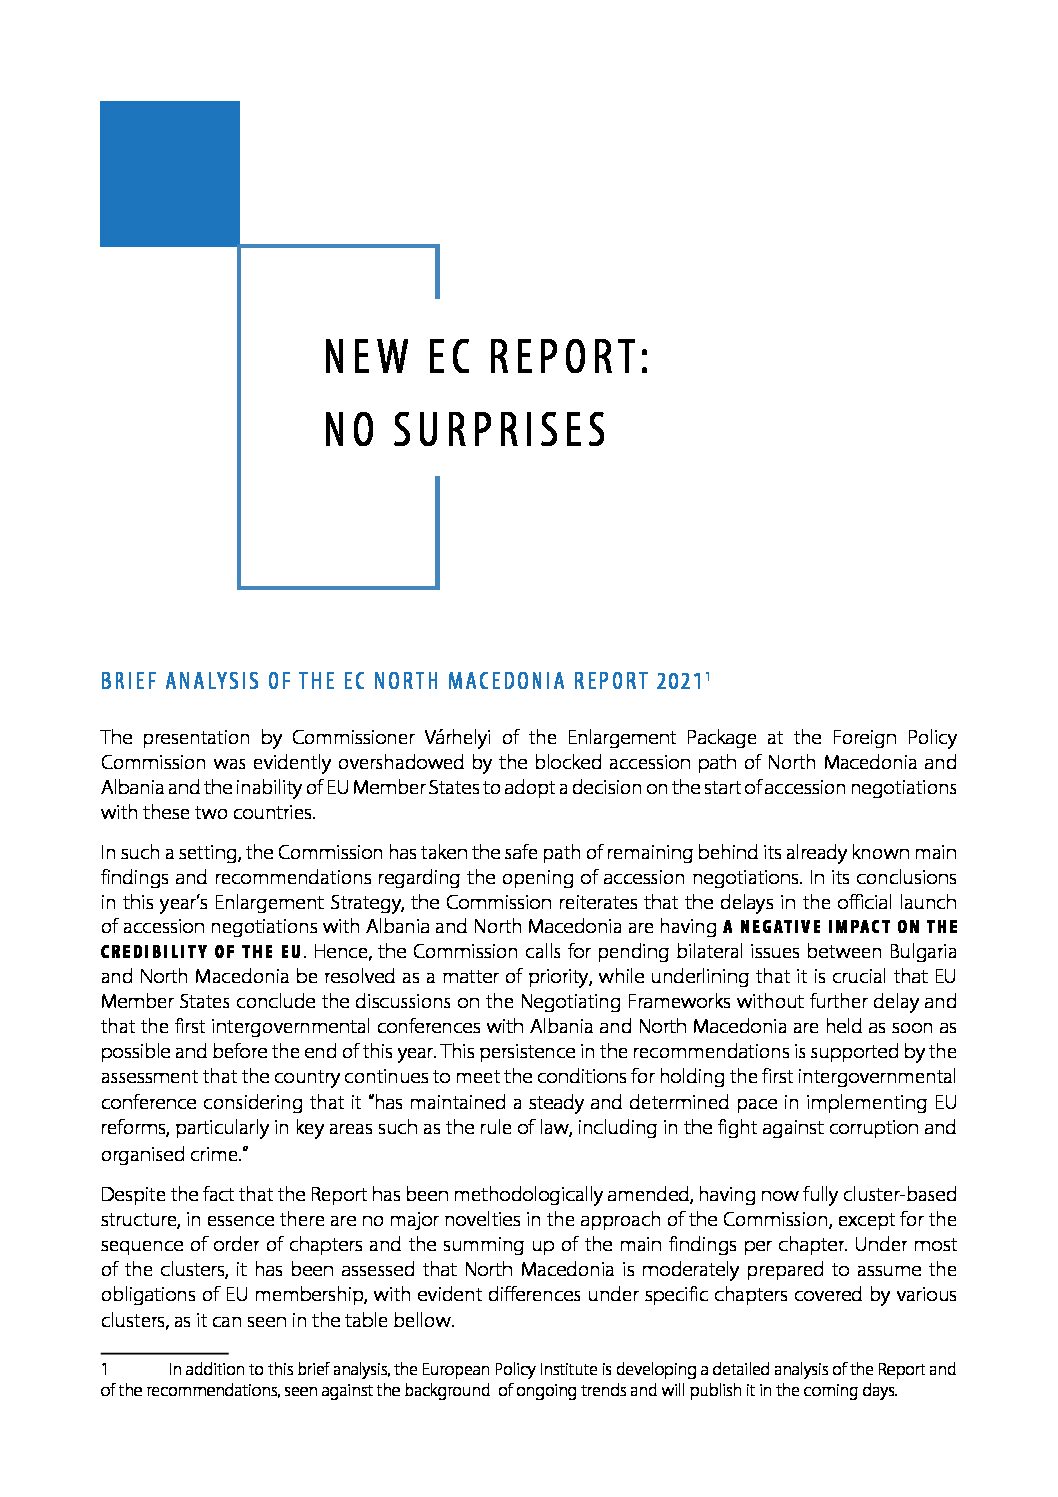 New EC Report: No Surprises